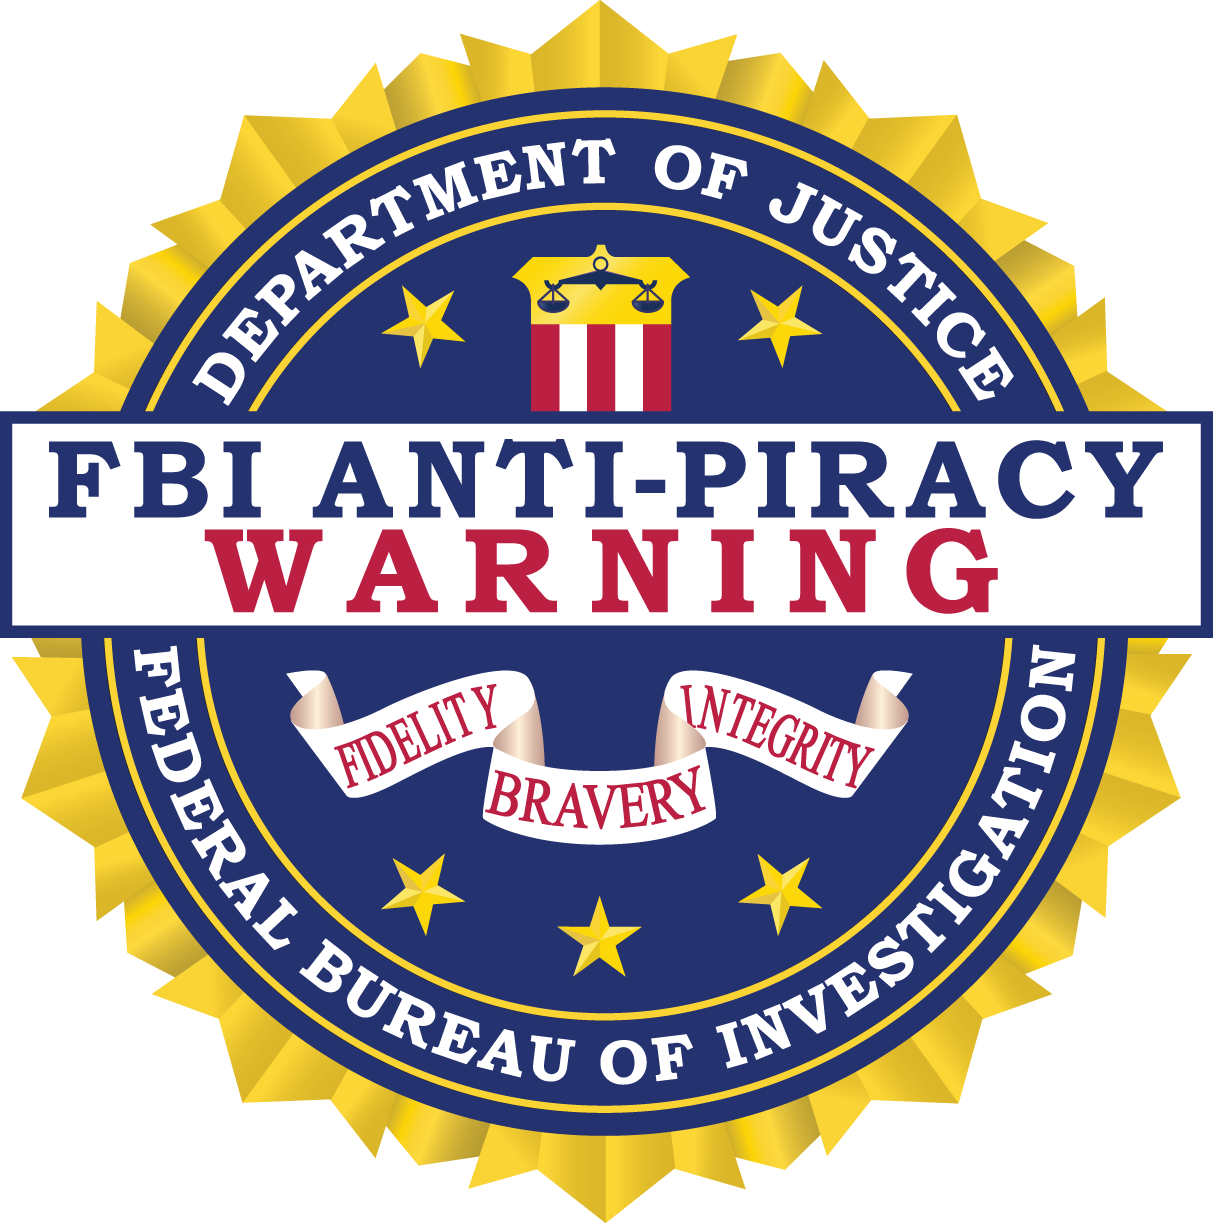 Fbi Anti Piracy Warning Seal — Fbi